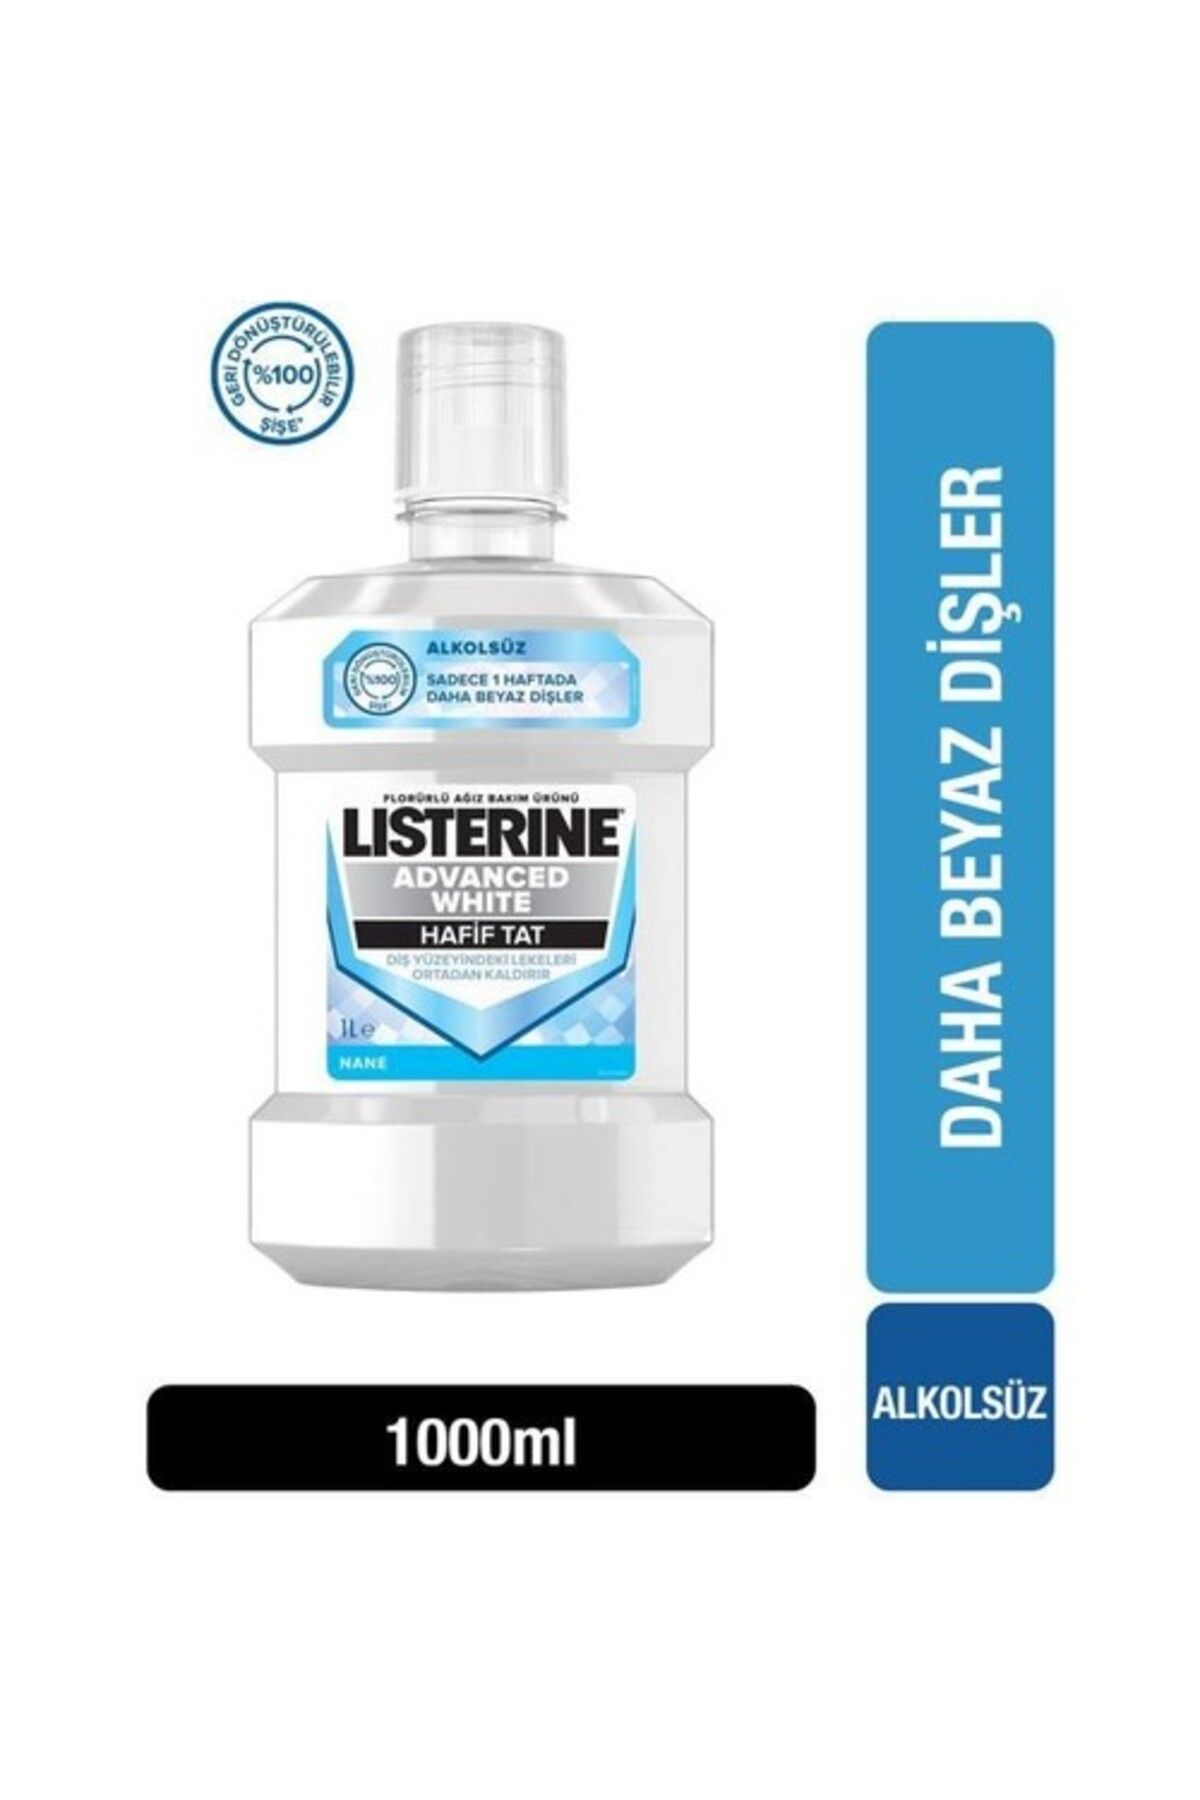 Listerine Advanced White hafif Tat ağiz Bakim Suyu 1000 ml